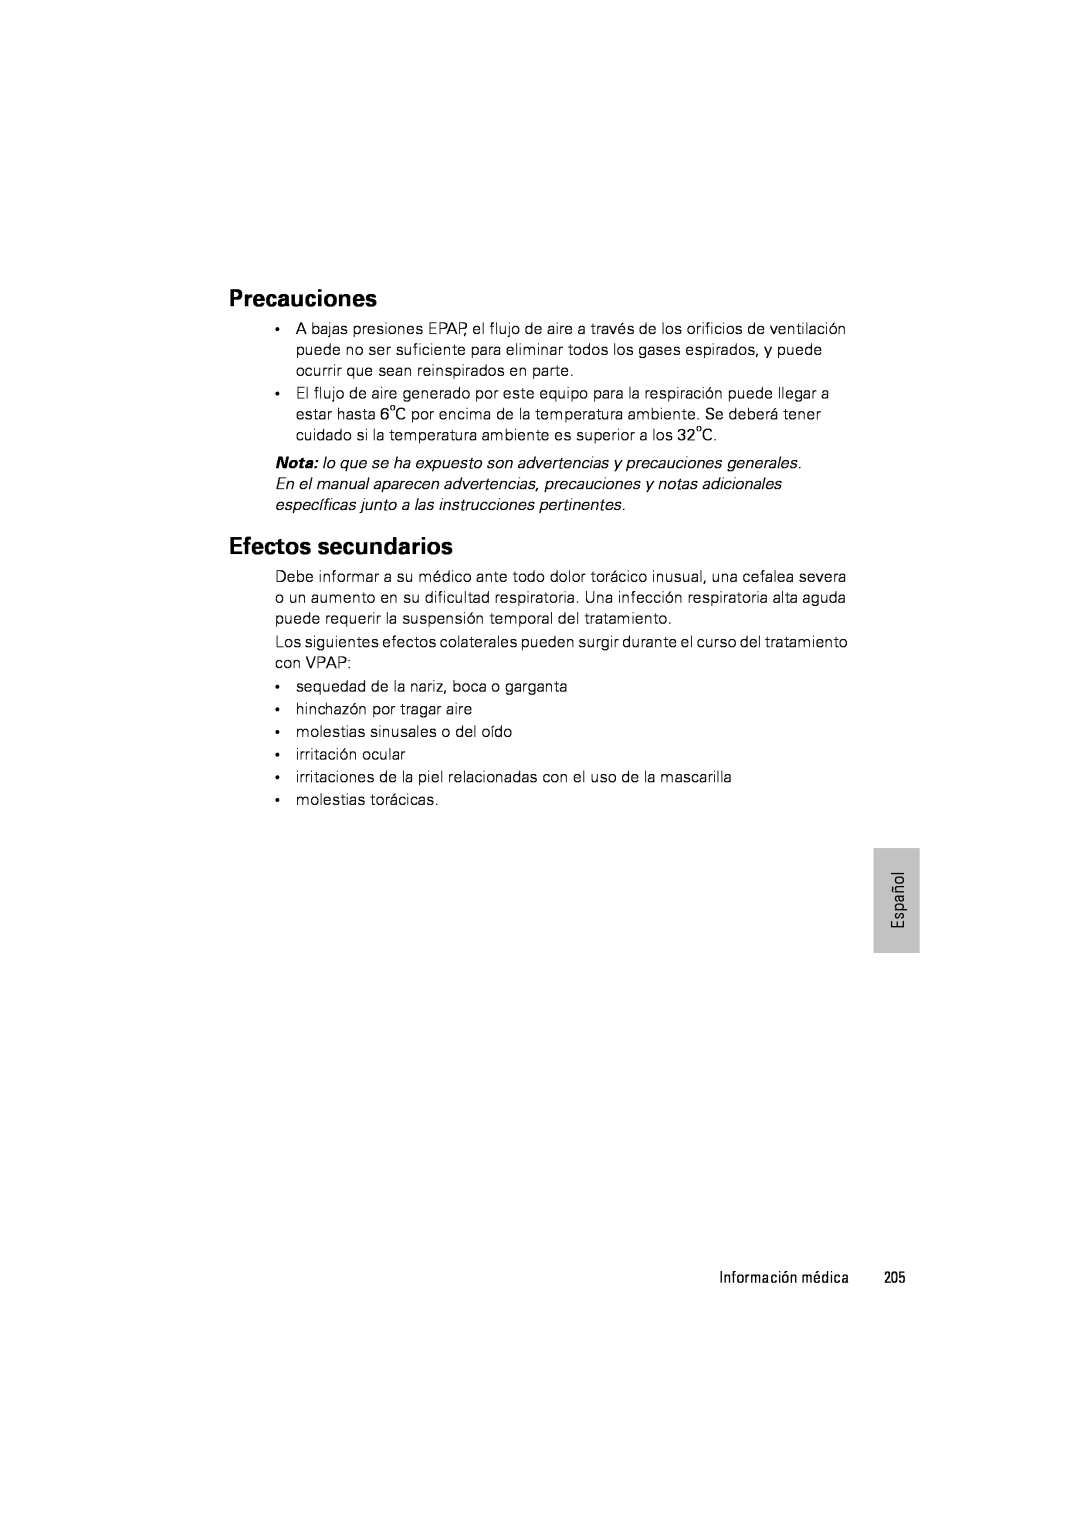 ResMed III & III ST user manual Precauciones, Efectos secundarios 